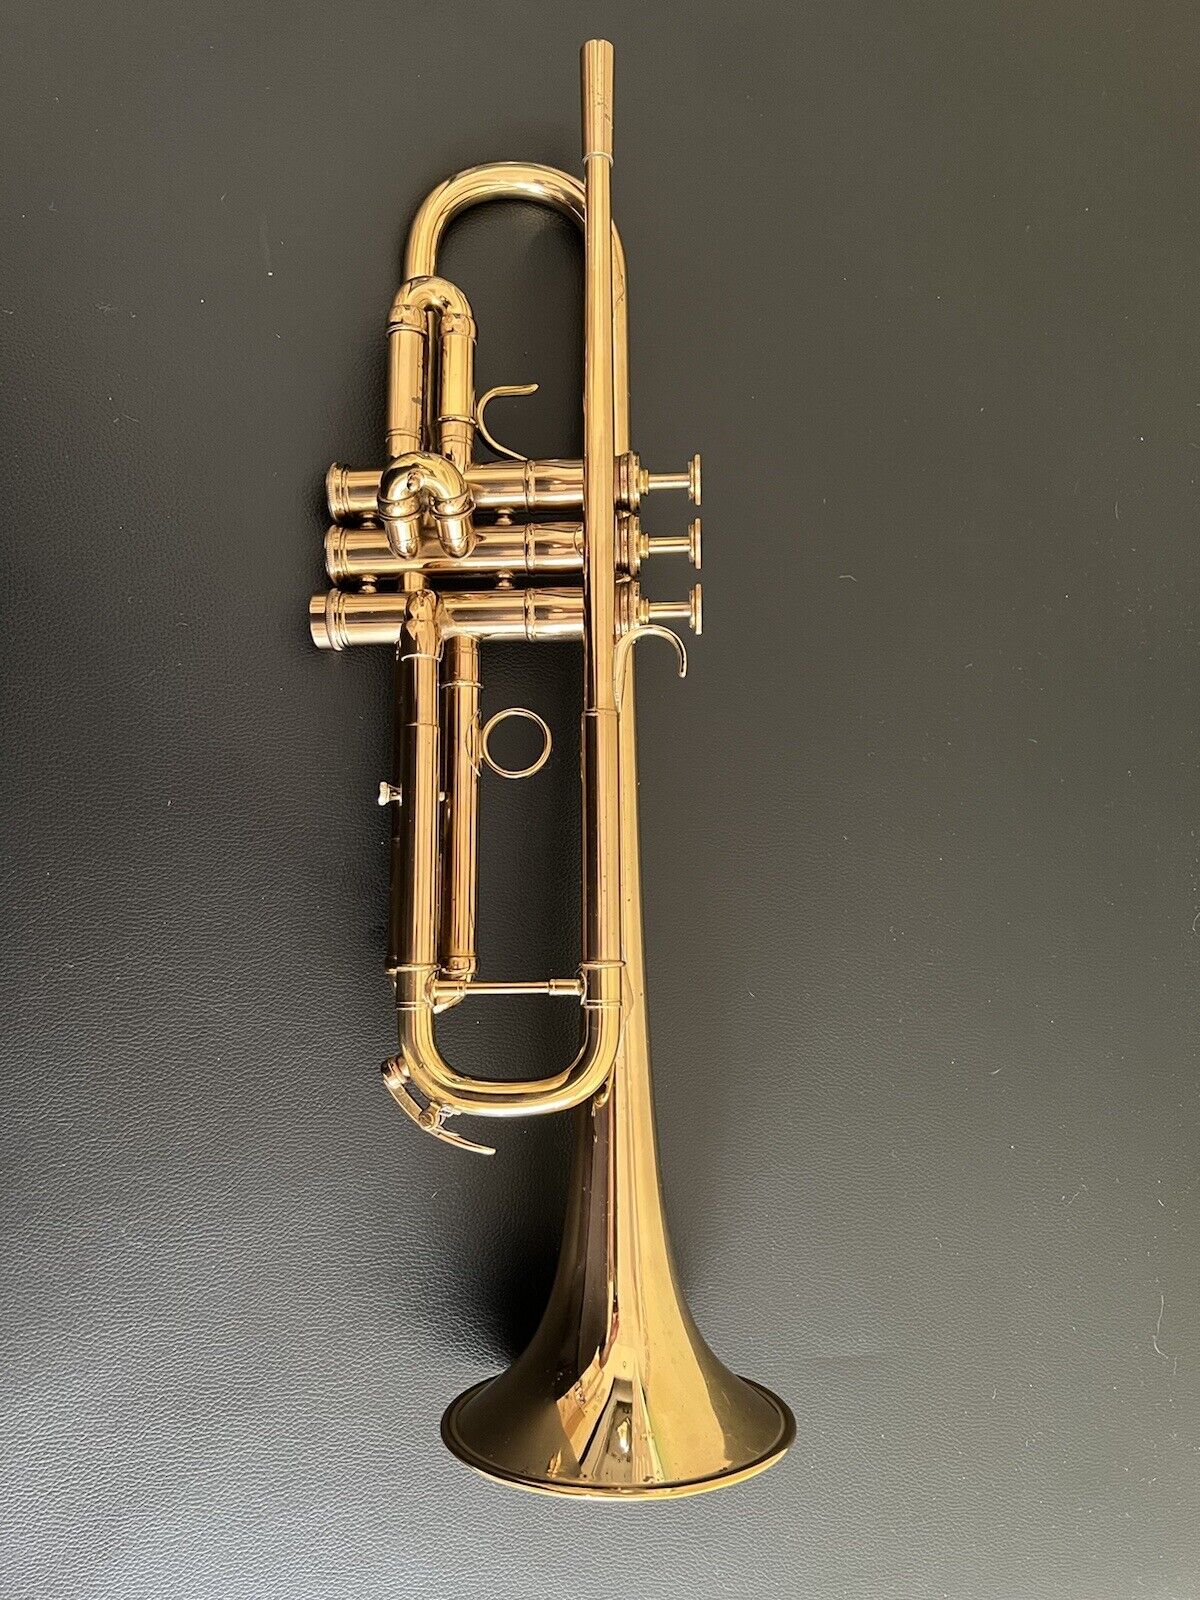 Adams A5 Bb trumpet